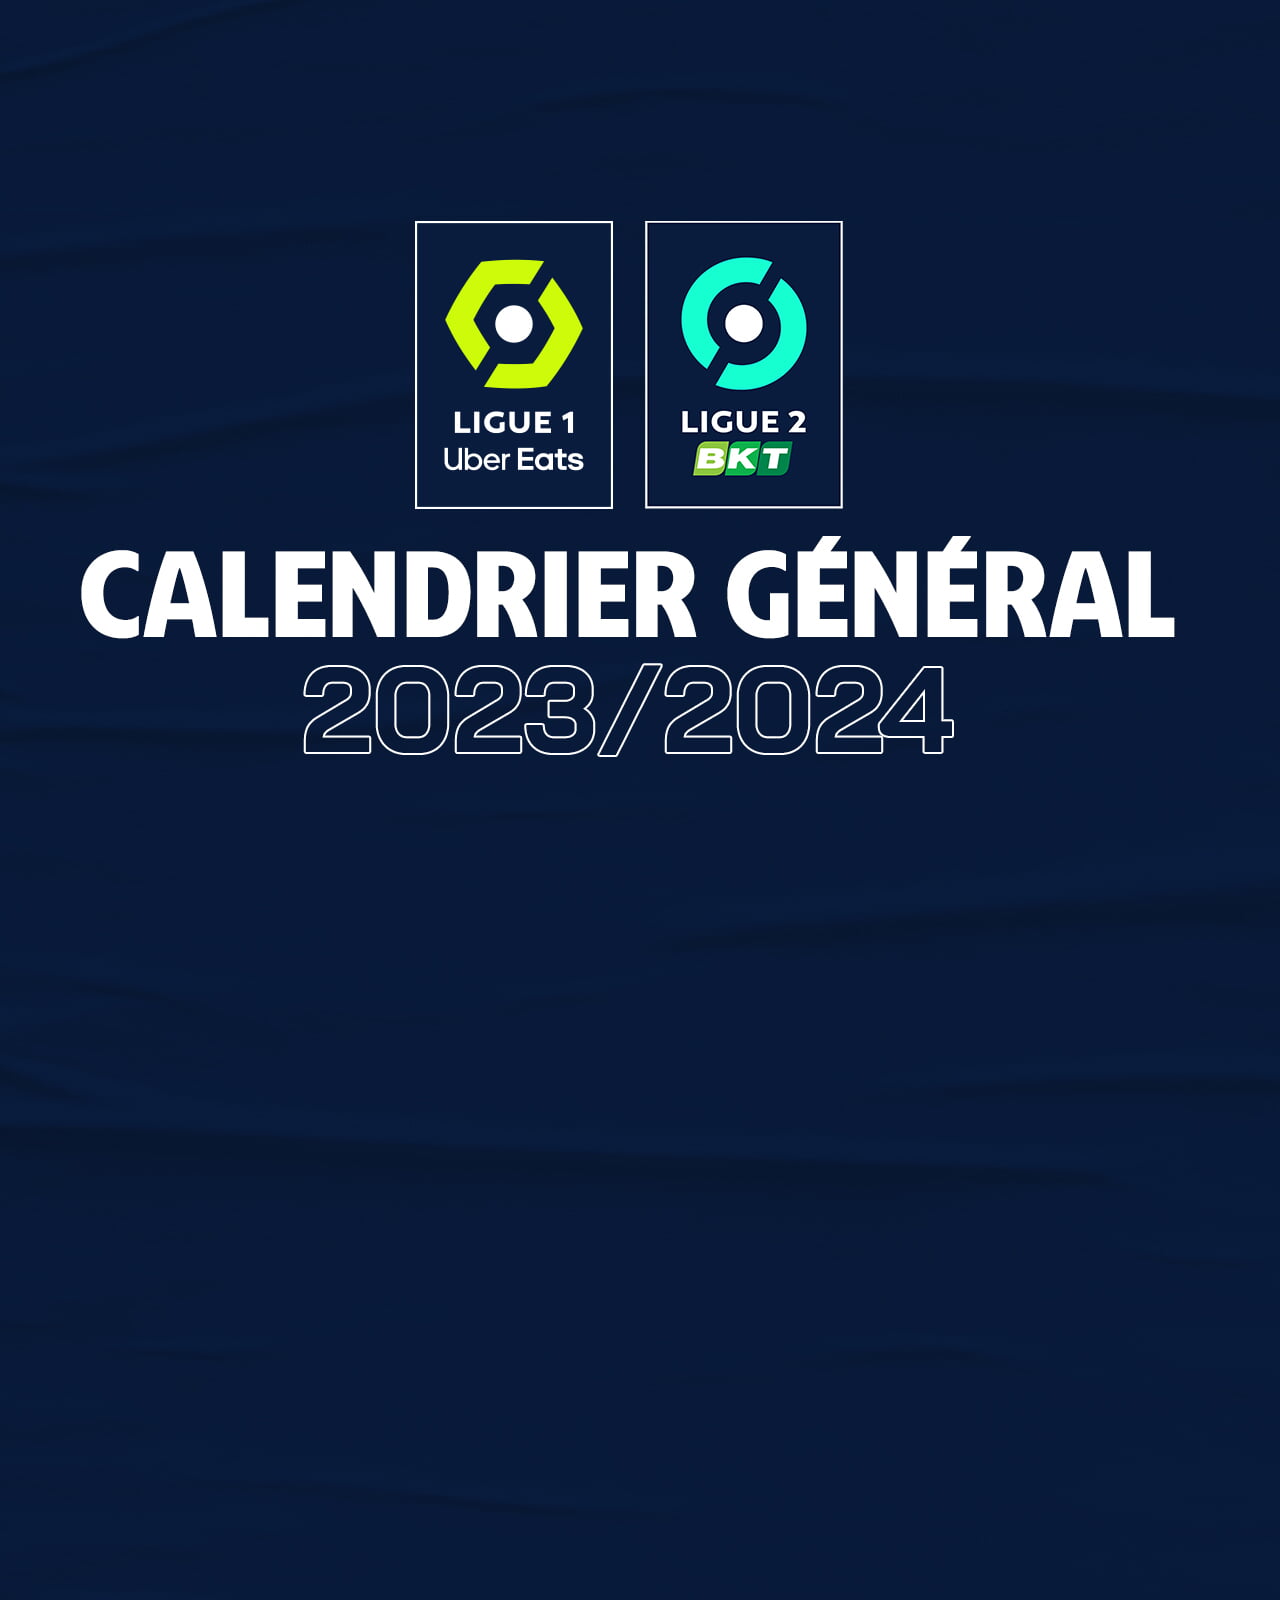 Calendriers PREVISIONNEL détections saison 2023/2024 – Ligue Corse